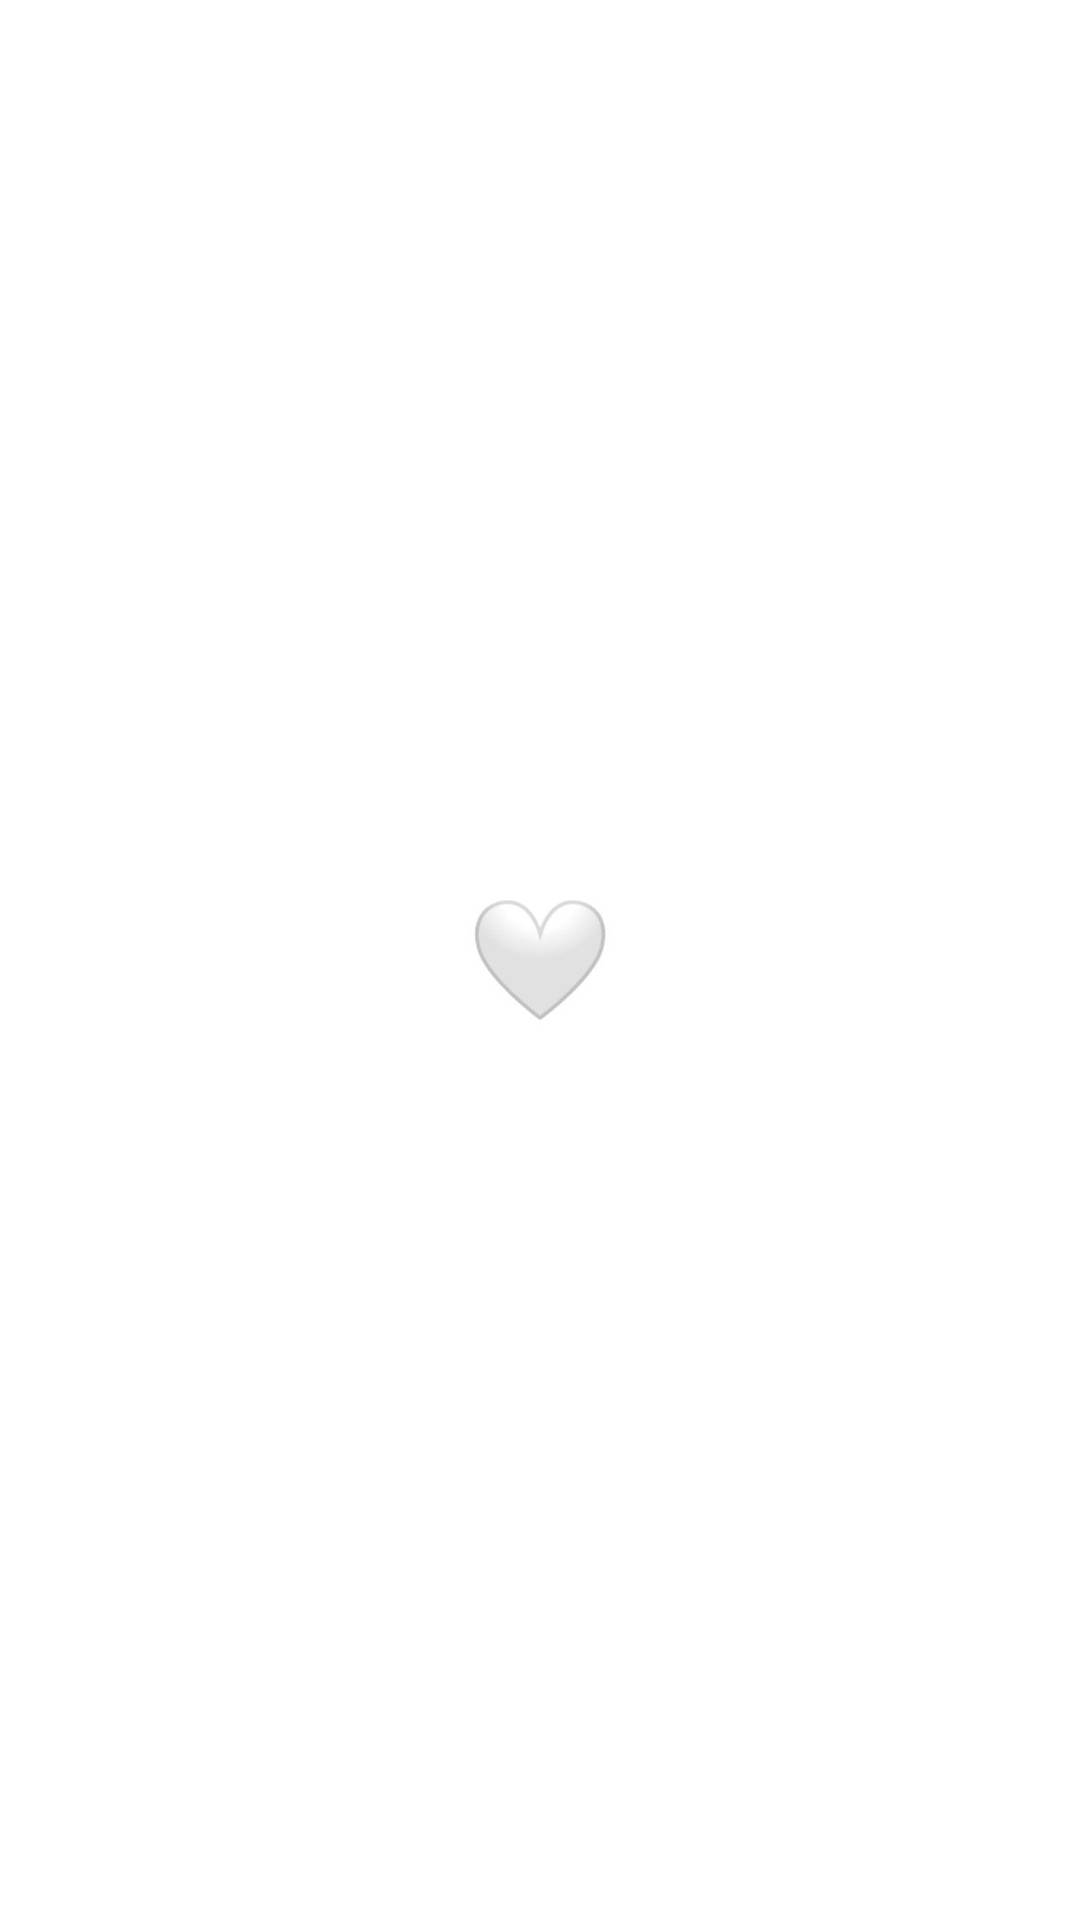 Elsker Sort Og Hvidt Hjerte Emoji Wallpaper